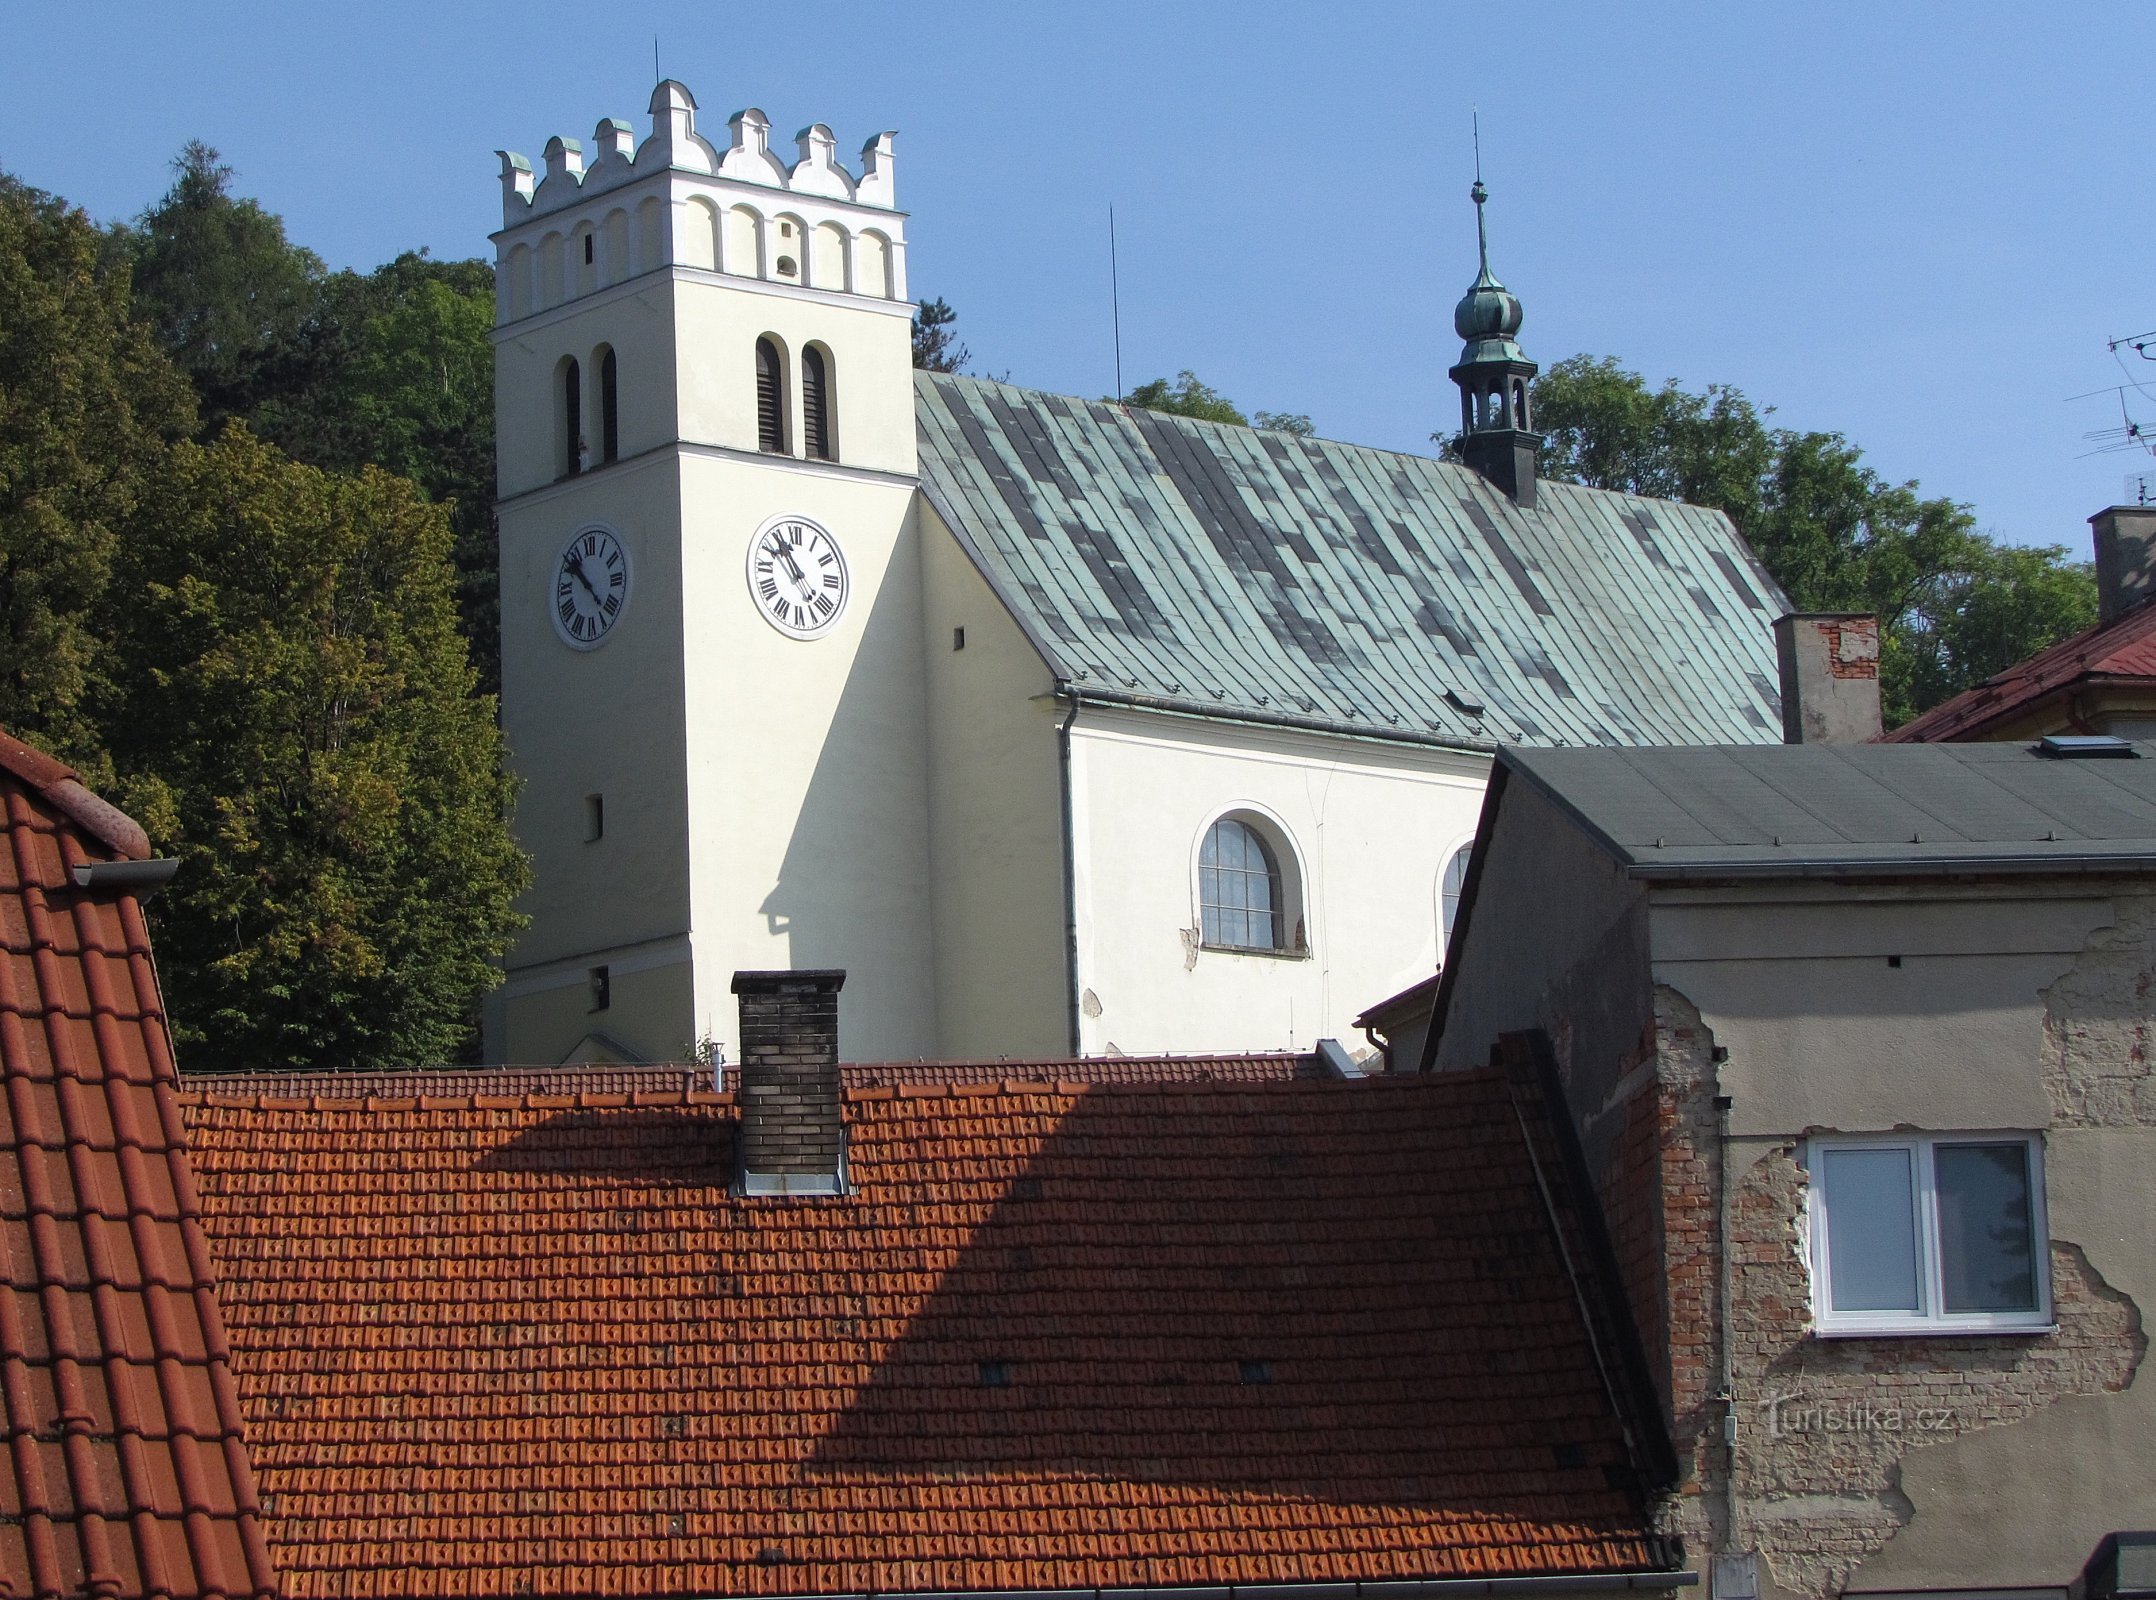 Starý Jičín - 聖ヴァーツラフ教会